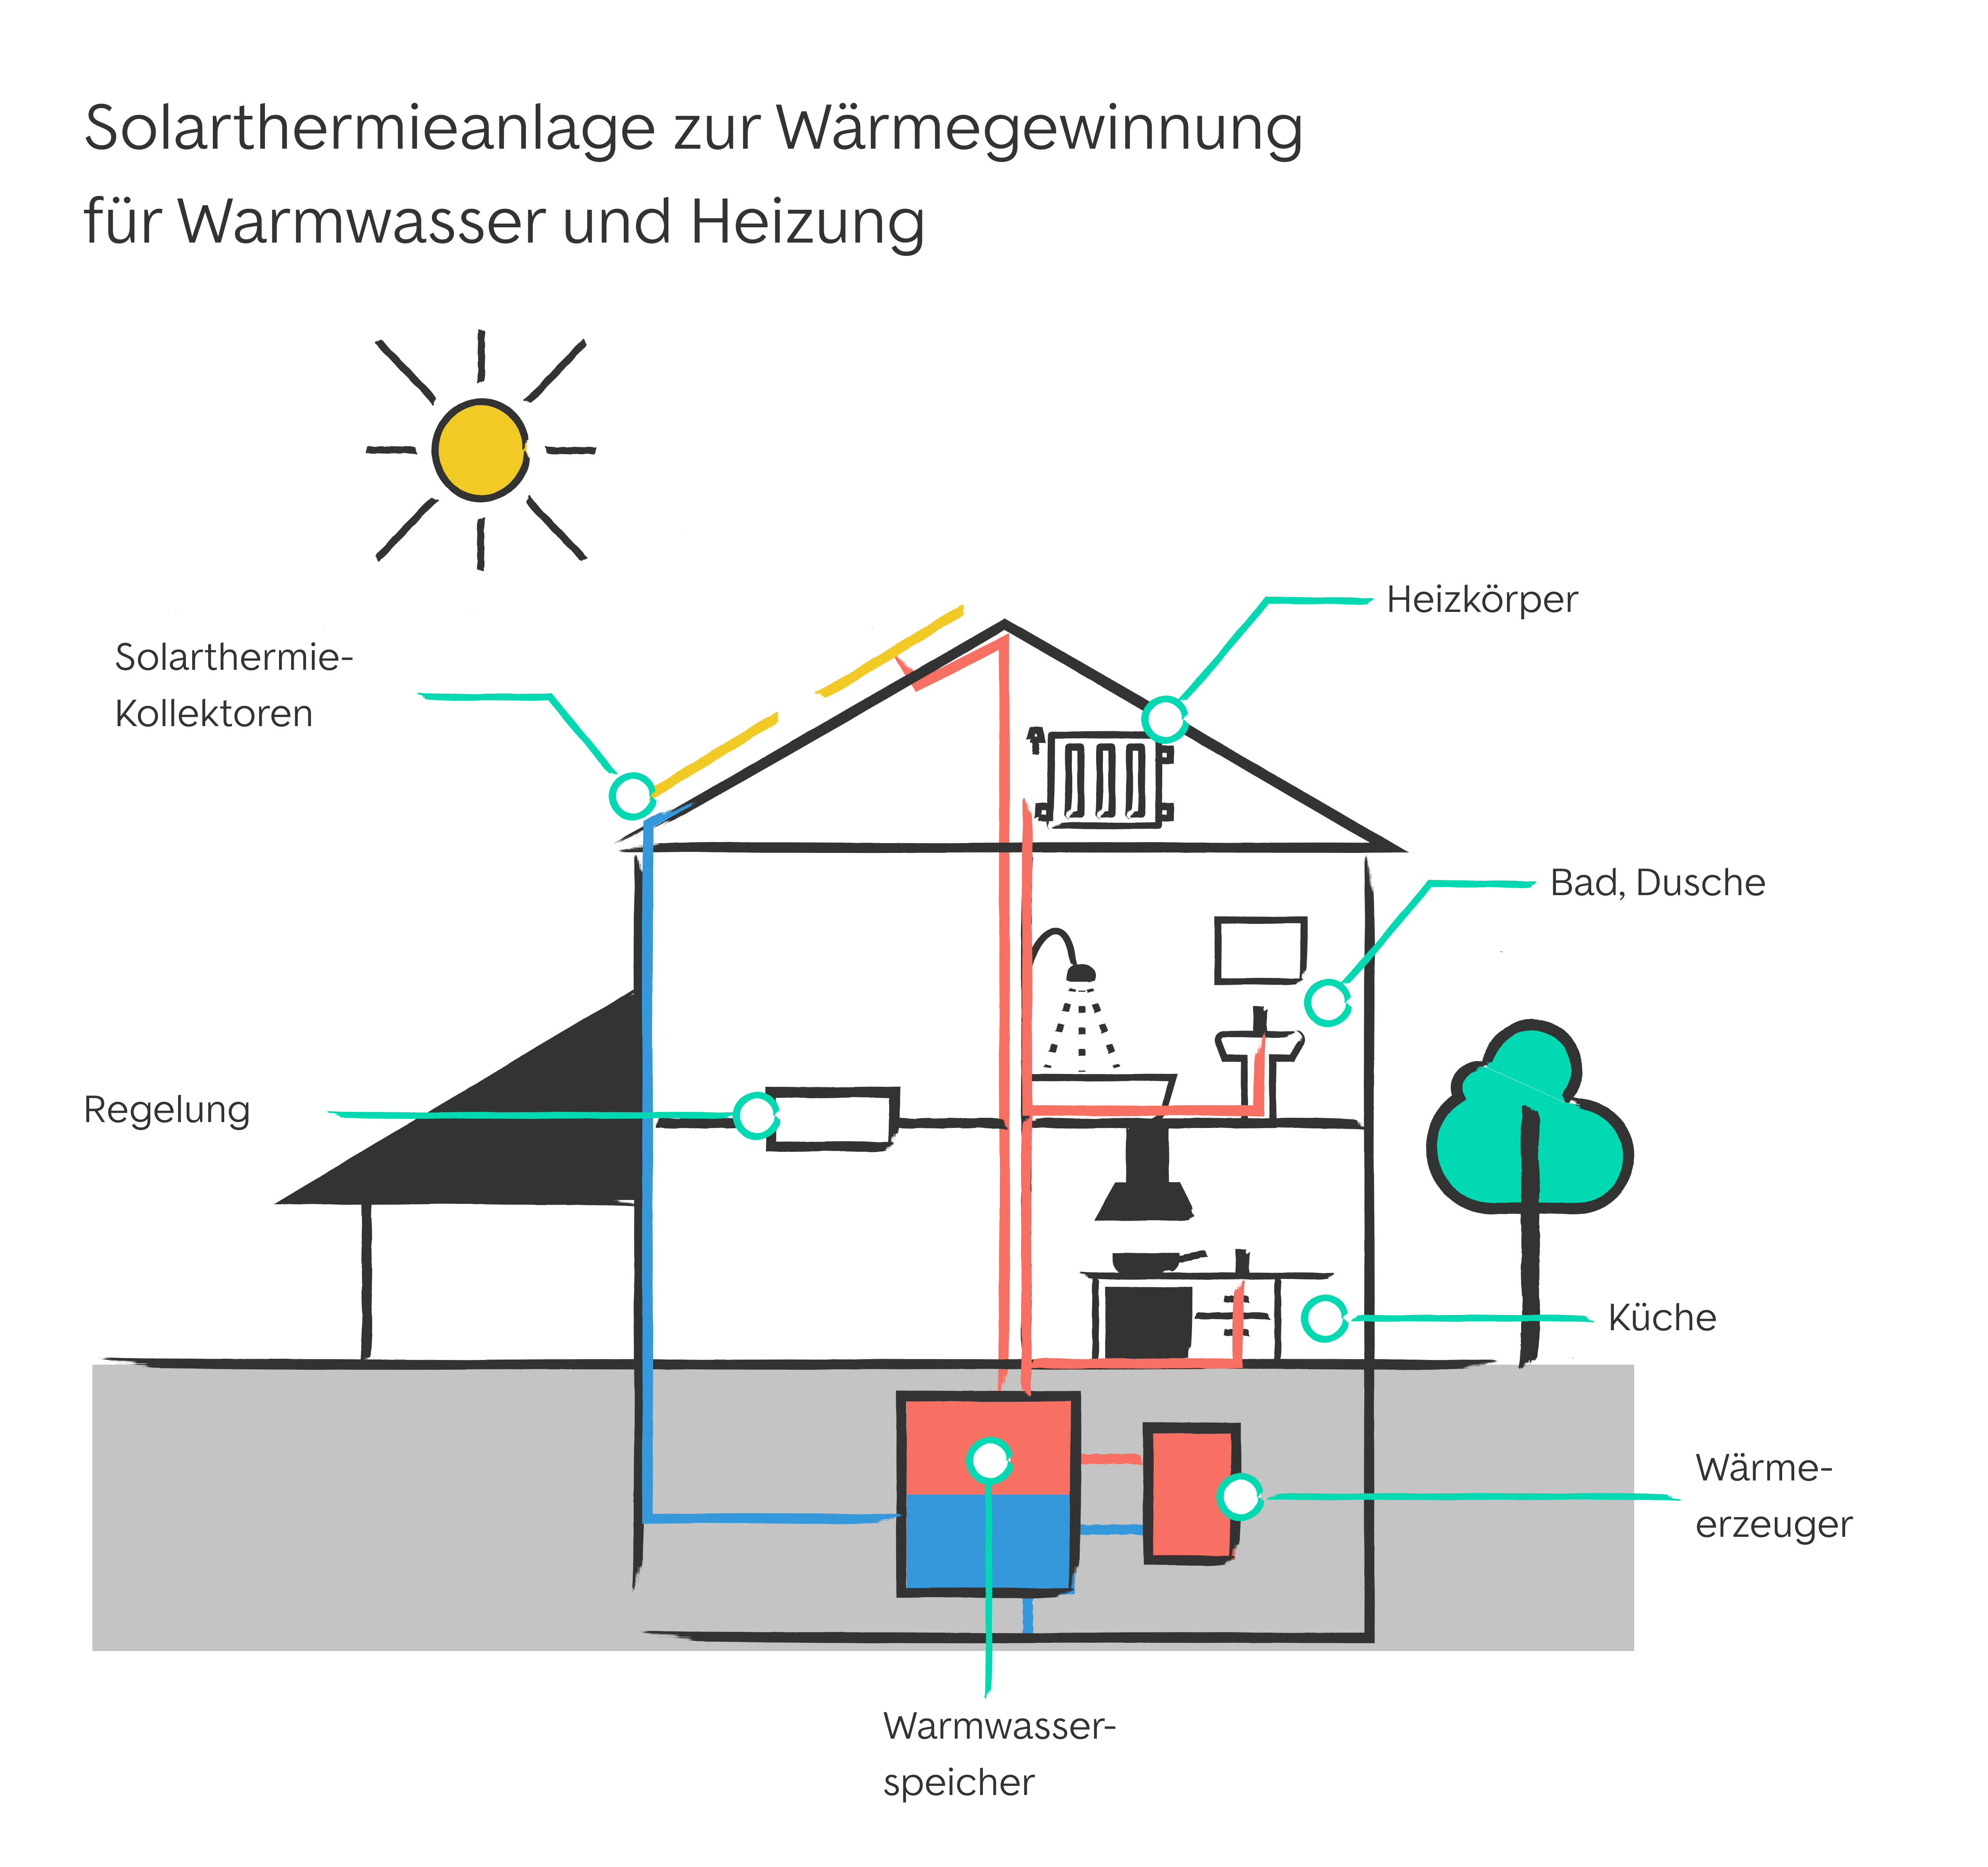 Solarthermieanlage zur Wärmegewinnung für Warmwasser und Heizung